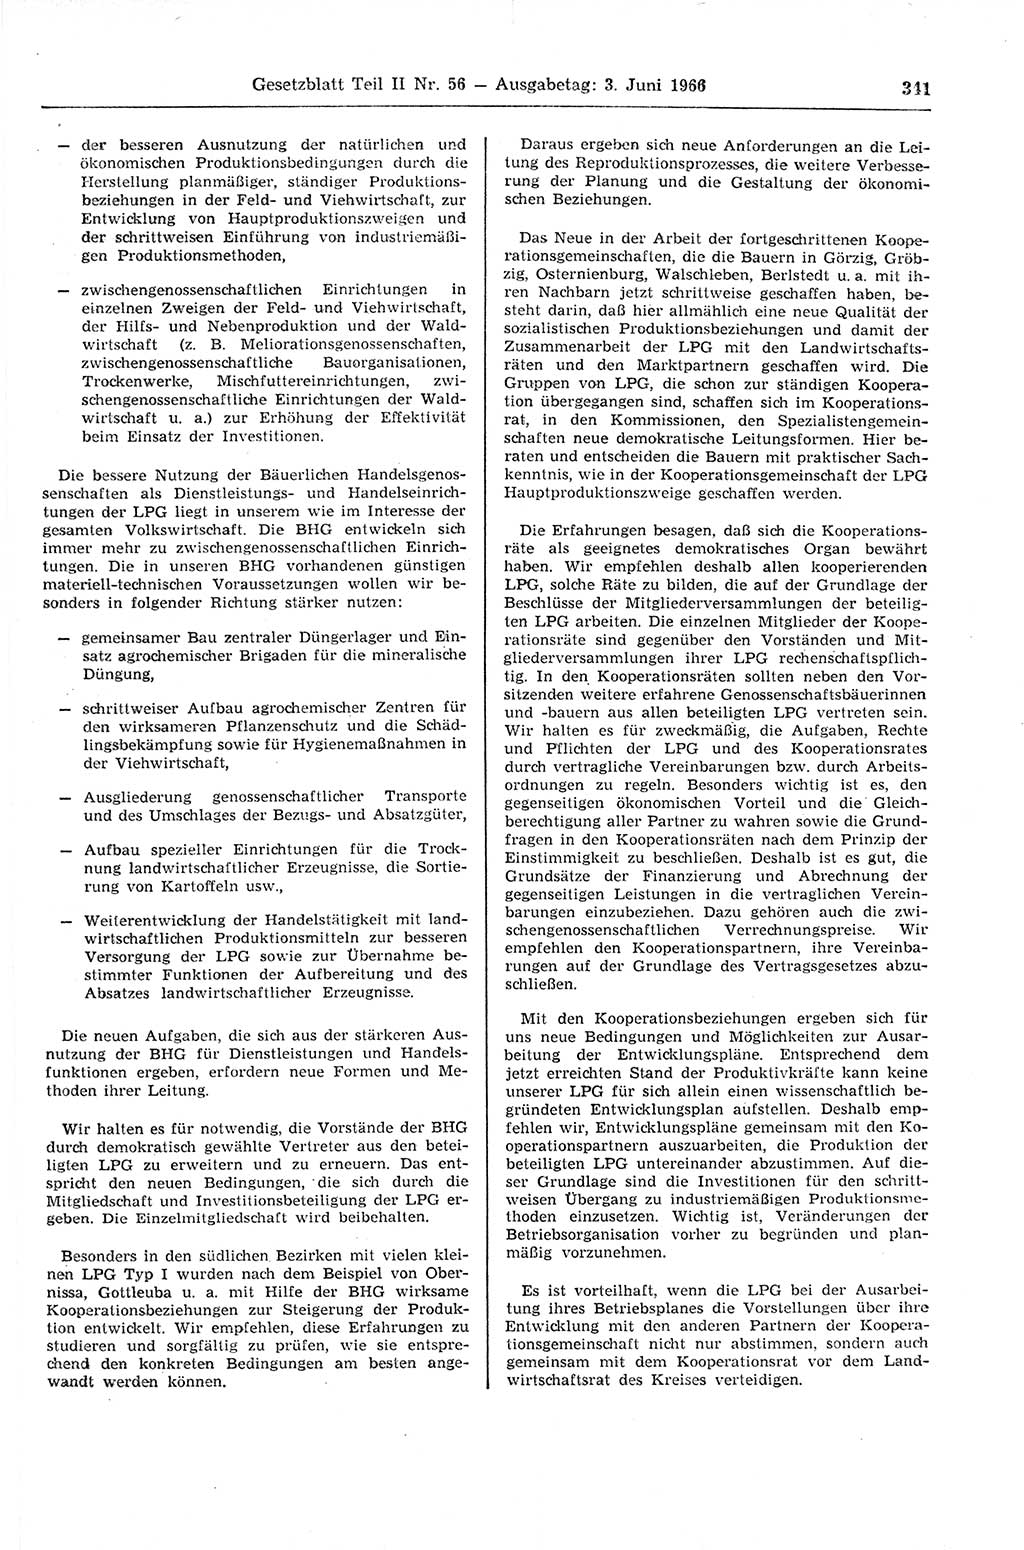 Gesetzblatt (GBl.) der Deutschen Demokratischen Republik (DDR) Teil ⅠⅠ 1966, Seite 341 (GBl. DDR ⅠⅠ 1966, S. 341)